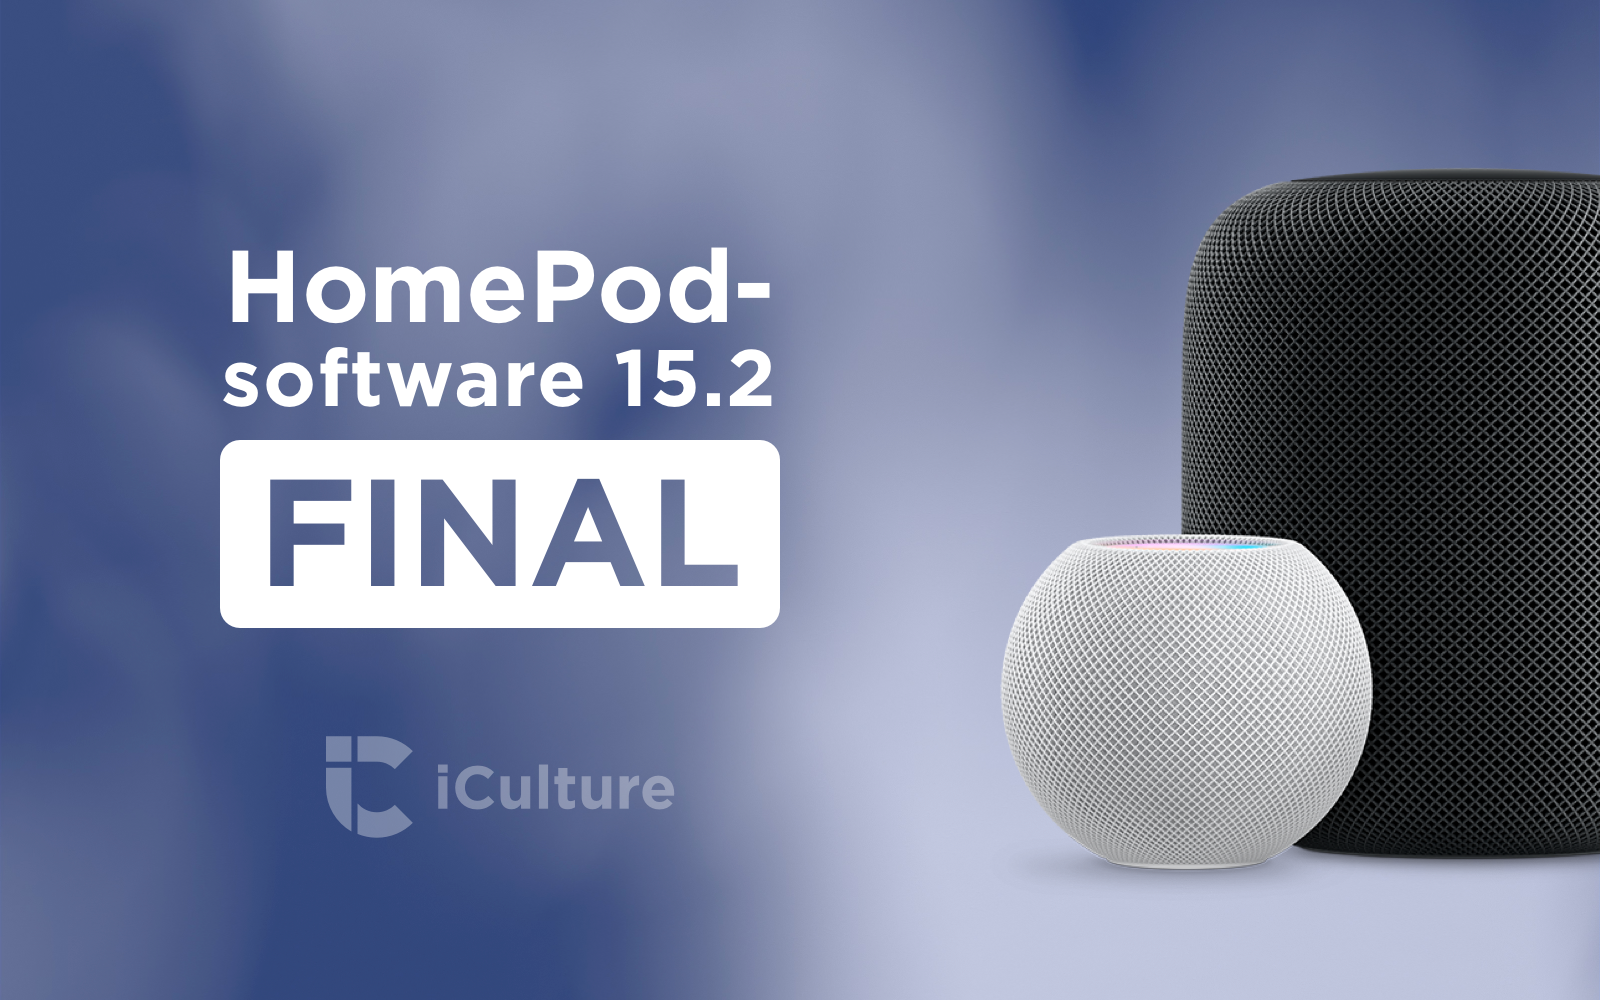 HomePod software-update 15.2 final.